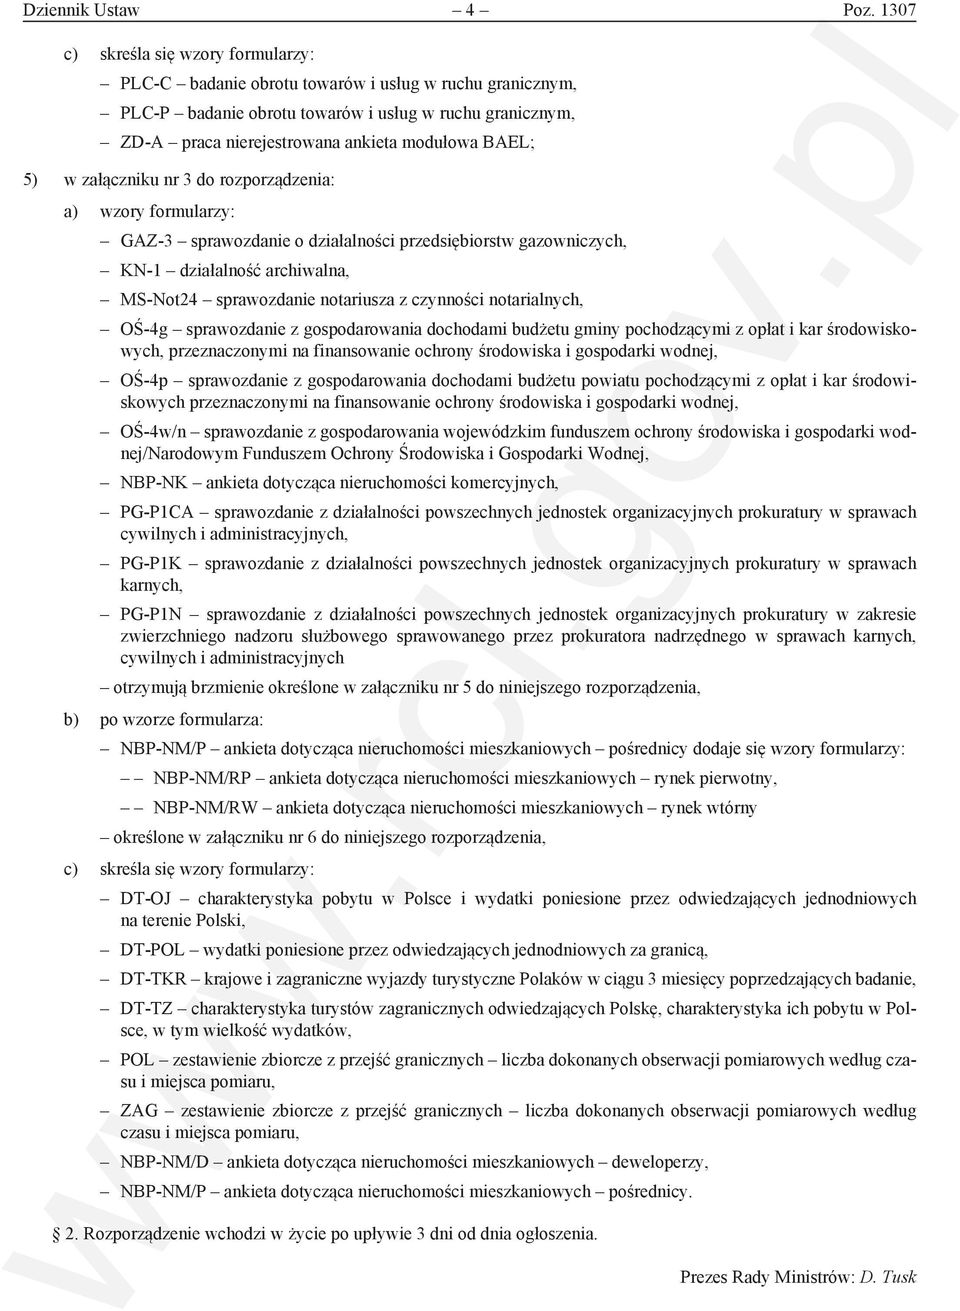 BAEL; 5) w załączniku nr 3 do rozporządzenia: a) wzory formularzy: GAZ-3 sprawozdanie o działalności przedsiębiorstw gazowniczych, KN-1 działalność archiwalna, MS-Not24 sprawozdanie notariusza z